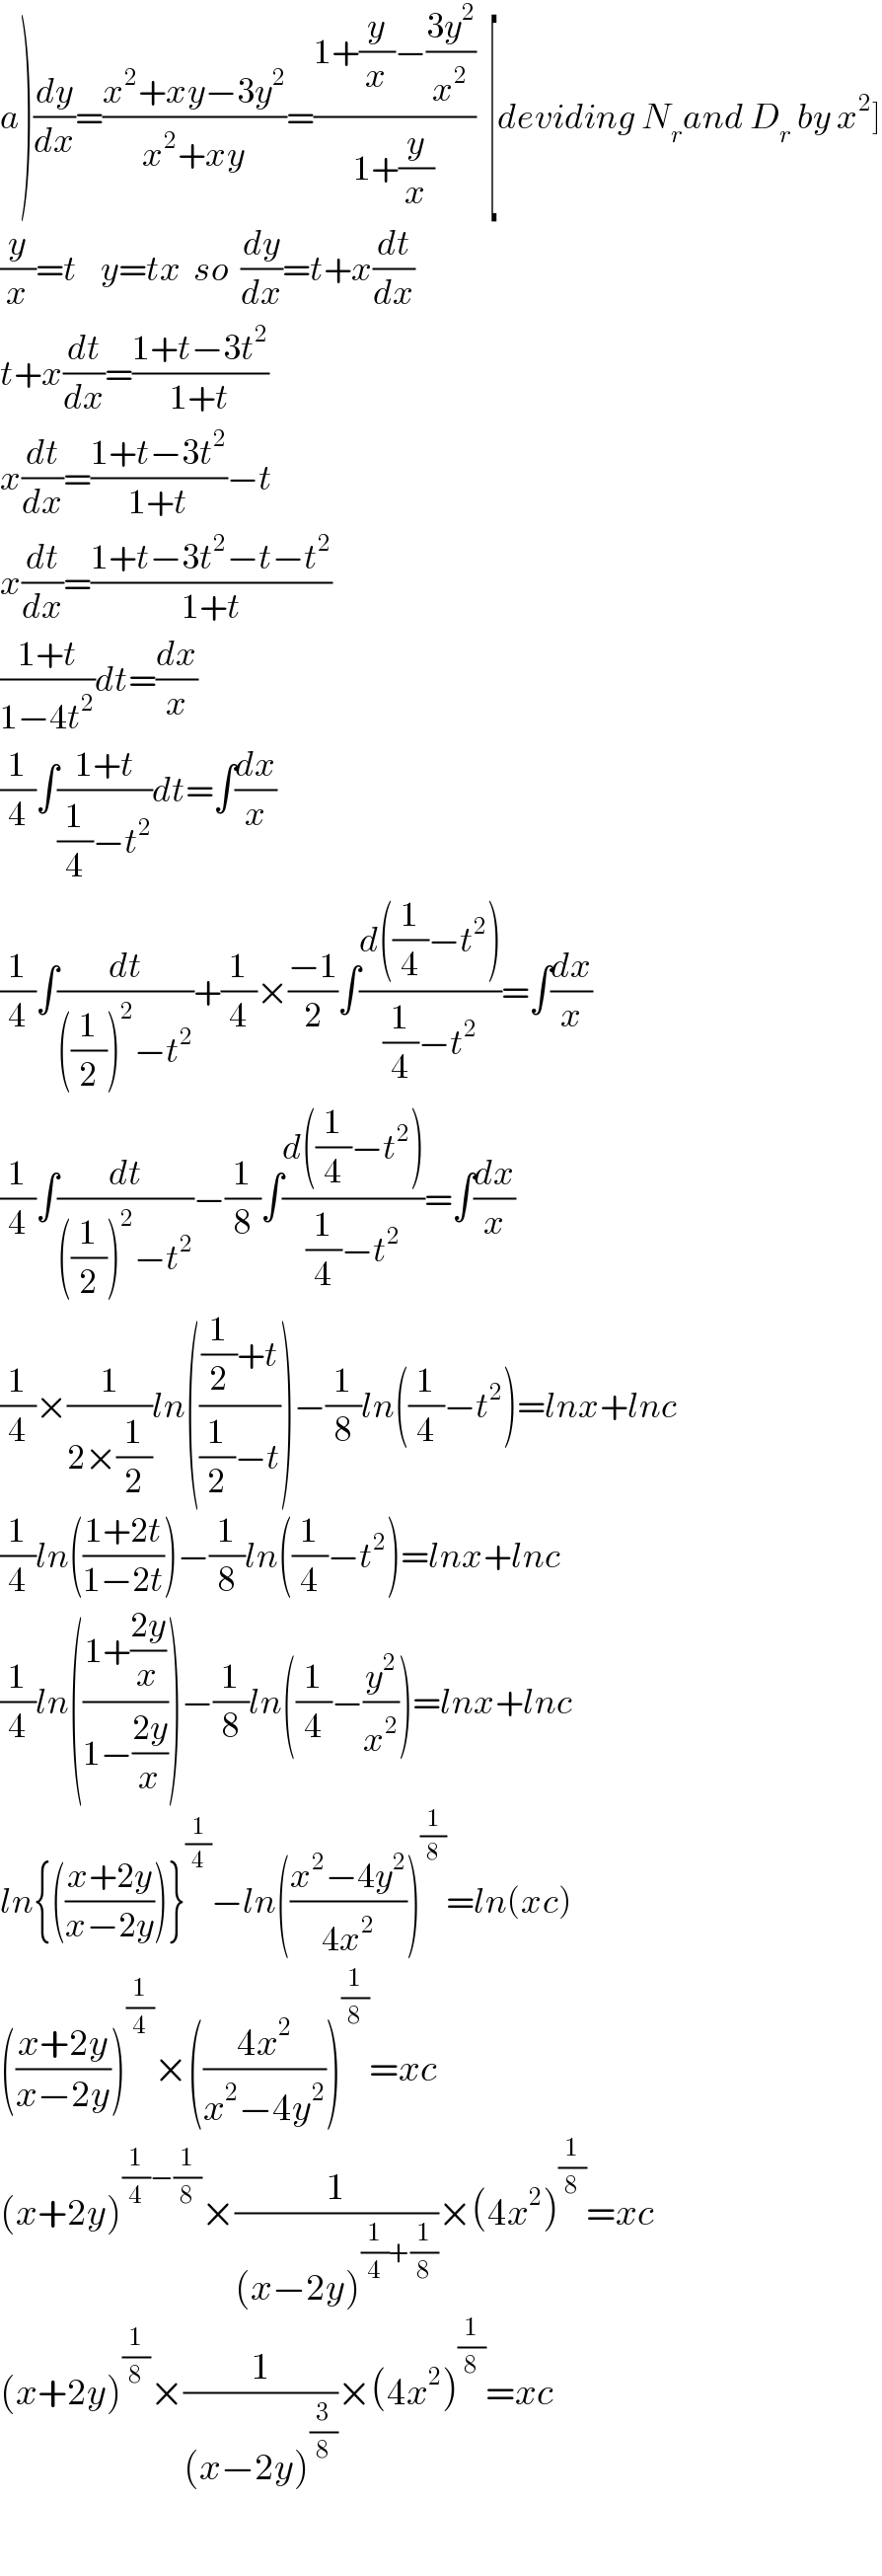 a)(dy/dx)=((x^2 +xy−3y^2 )/(x^2 +xy))=((1+(y/x)−((3y^2 )/x^2 ))/(1+(y/x)))  [deviding N_r and D_r  by x^2 ]  (y/x)=t    y=tx  so  (dy/dx)=t+x(dt/dx)  t+x(dt/dx)=((1+t−3t^2 )/(1+t))  x(dt/dx)=((1+t−3t^2 )/(1+t))−t  x(dt/dx)=((1+t−3t^2 −t−t^2 )/(1+t))  ((1+t)/(1−4t^2 ))dt=(dx/x)  (1/4)∫((1+t)/((1/4)−t^2 ))dt=∫(dx/x)  (1/4)∫(dt/(((1/2))^2 −t^2 ))+(1/4)×((−1)/2)∫((d((1/4)−t^2 ))/((1/4)−t^2 ))=∫(dx/x)  (1/4)∫(dt/(((1/2))^2 −t^2 ))−(1/8)∫((d((1/4)−t^2 ))/((1/4)−t^2 ))=∫(dx/x)  (1/4)×(1/(2×(1/2)))ln((((1/2)+t)/((1/2)−t)))−(1/8)ln((1/4)−t^2 )=lnx+lnc  (1/4)ln(((1+2t)/(1−2t)))−(1/8)ln((1/4)−t^2 )=lnx+lnc  (1/4)ln(((1+((2y)/x))/(1−((2y)/x))))−(1/8)ln((1/4)−(y^2 /x^2 ))=lnx+lnc  ln{(((x+2y)/(x−2y)))}^(1/4) −ln(((x^2 −4y^2 )/(4x^2 )))^(1/8) =ln(xc)  (((x+2y)/(x−2y)))^(1/4) ×(((4x^2 )/(x^2 −4y^2 )))^(1/8) =xc  (x+2y)^((1/4)−(1/8)) ×(1/((x−2y)^((1/4)+(1/8)) ))×(4x^2 )^(1/8) =xc  (x+2y)^(1/8) ×(1/((x−2y)^(3/8) ))×(4x^2 )^(1/8) =xc    